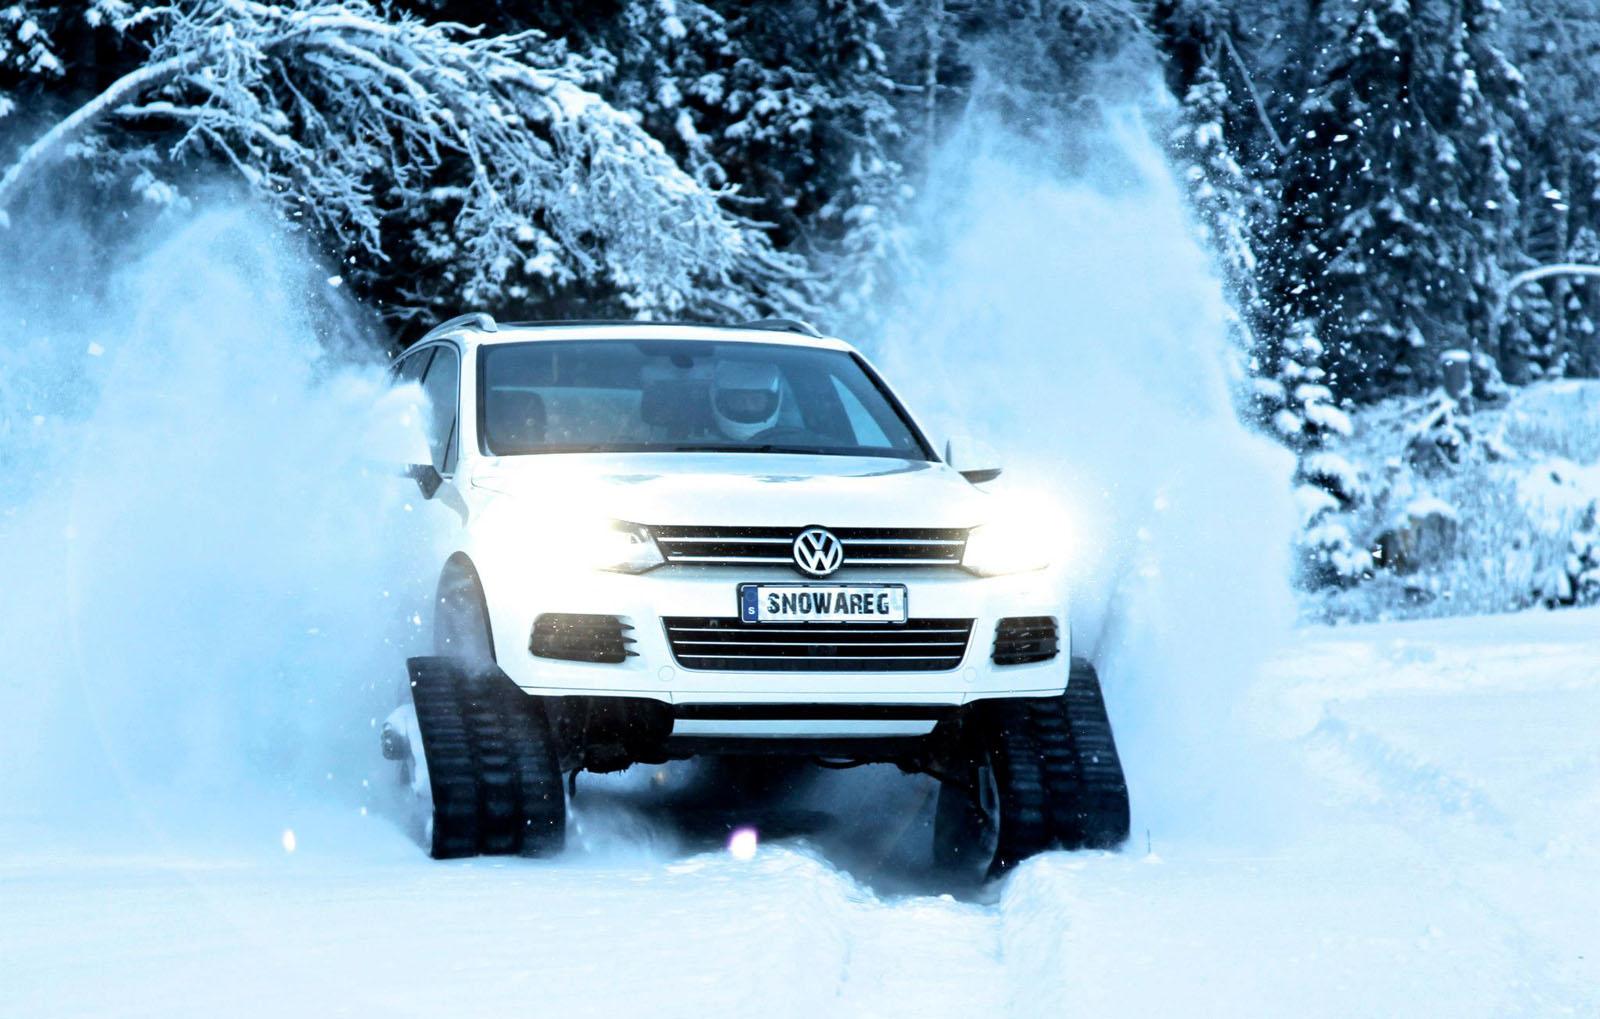 Volkswagen Snowareg